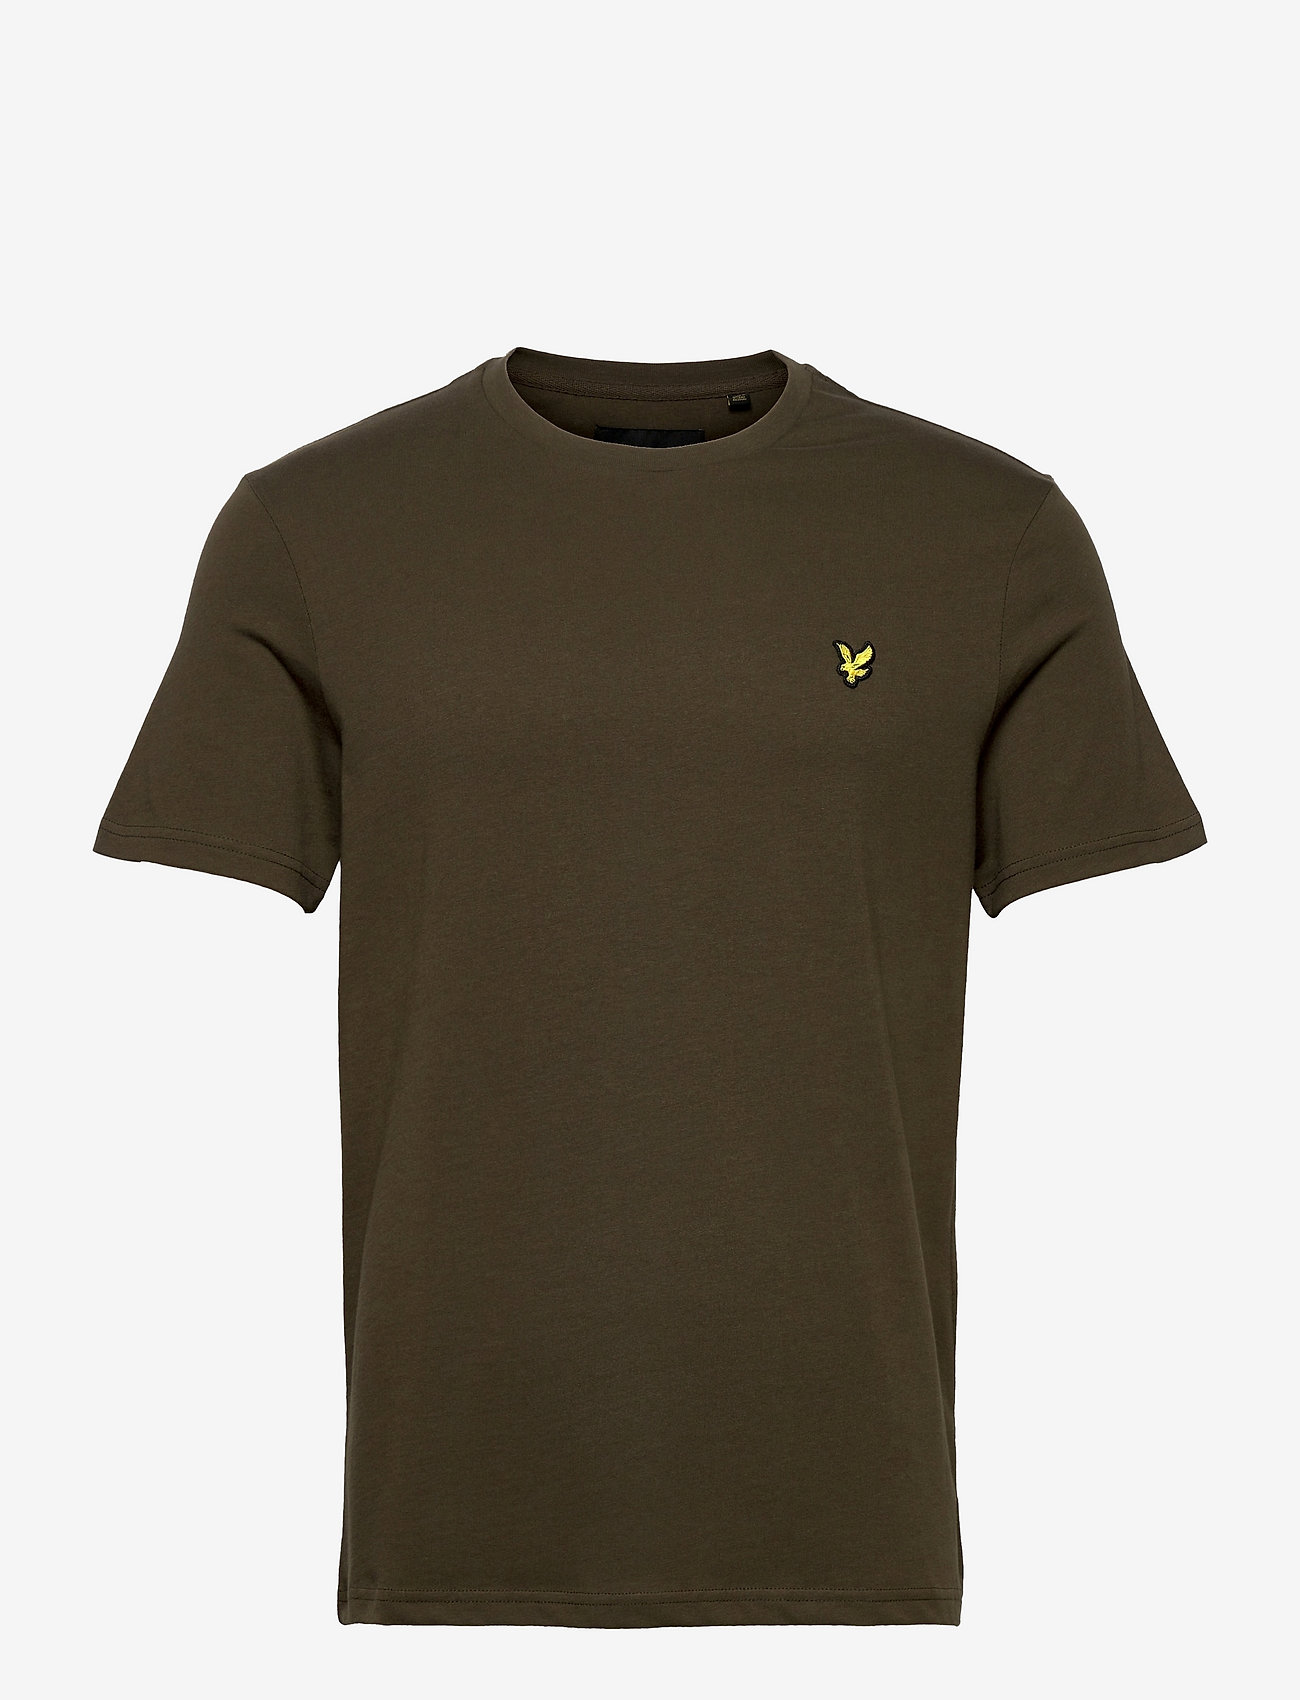 Lyle & Scott - Plain T-Shirt - laagste prijzen - olive - 0